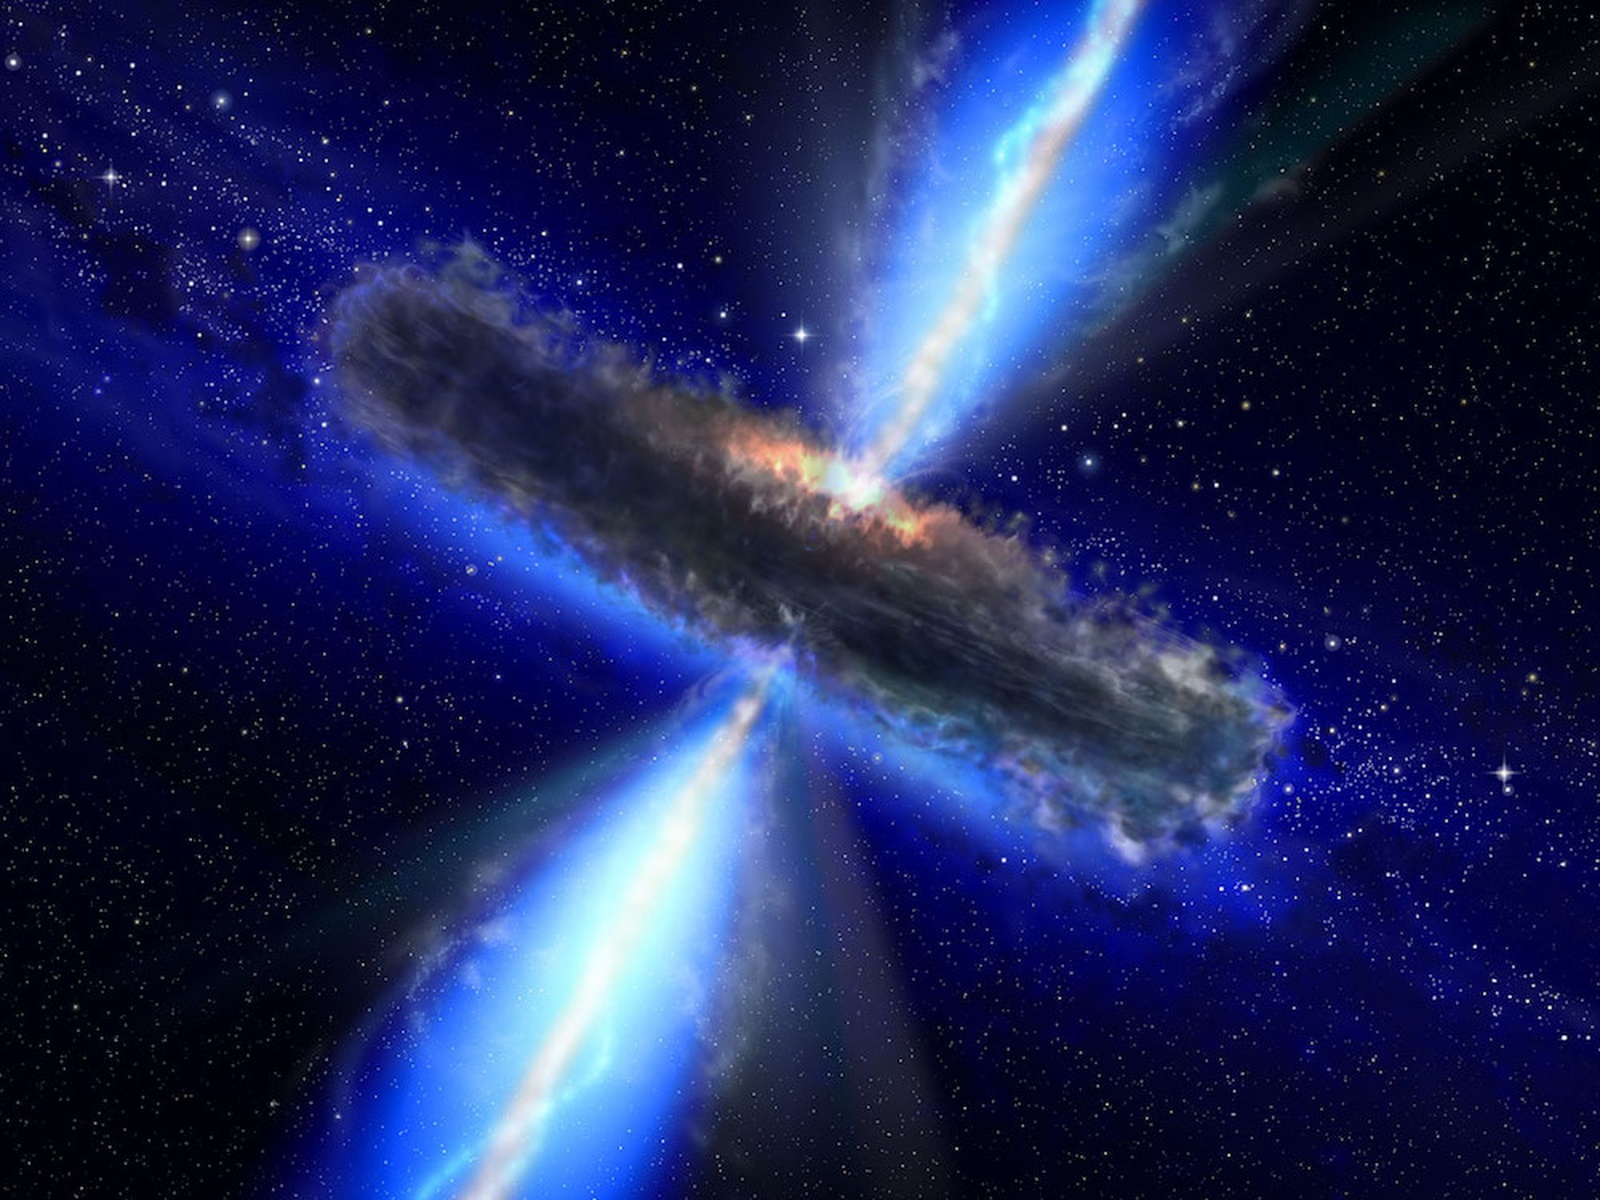 Prašnato in vroče dogajanje okoli supermasivne črne luknje (podoba je računalniška vizualizacija). Temni del je prašnati disk, ki se segreva in sveti, kar se lahko imenuje kvazar. Če je en od obeh ozkih žarkov usmerjen proti Zemlji, gre za blazar. V žarku je veliko visokoenergijskih kozmičnih delcev (atomskih jeder, protonov ...). Foto: ESA/NASA, the AVO project and Paolo Padovani